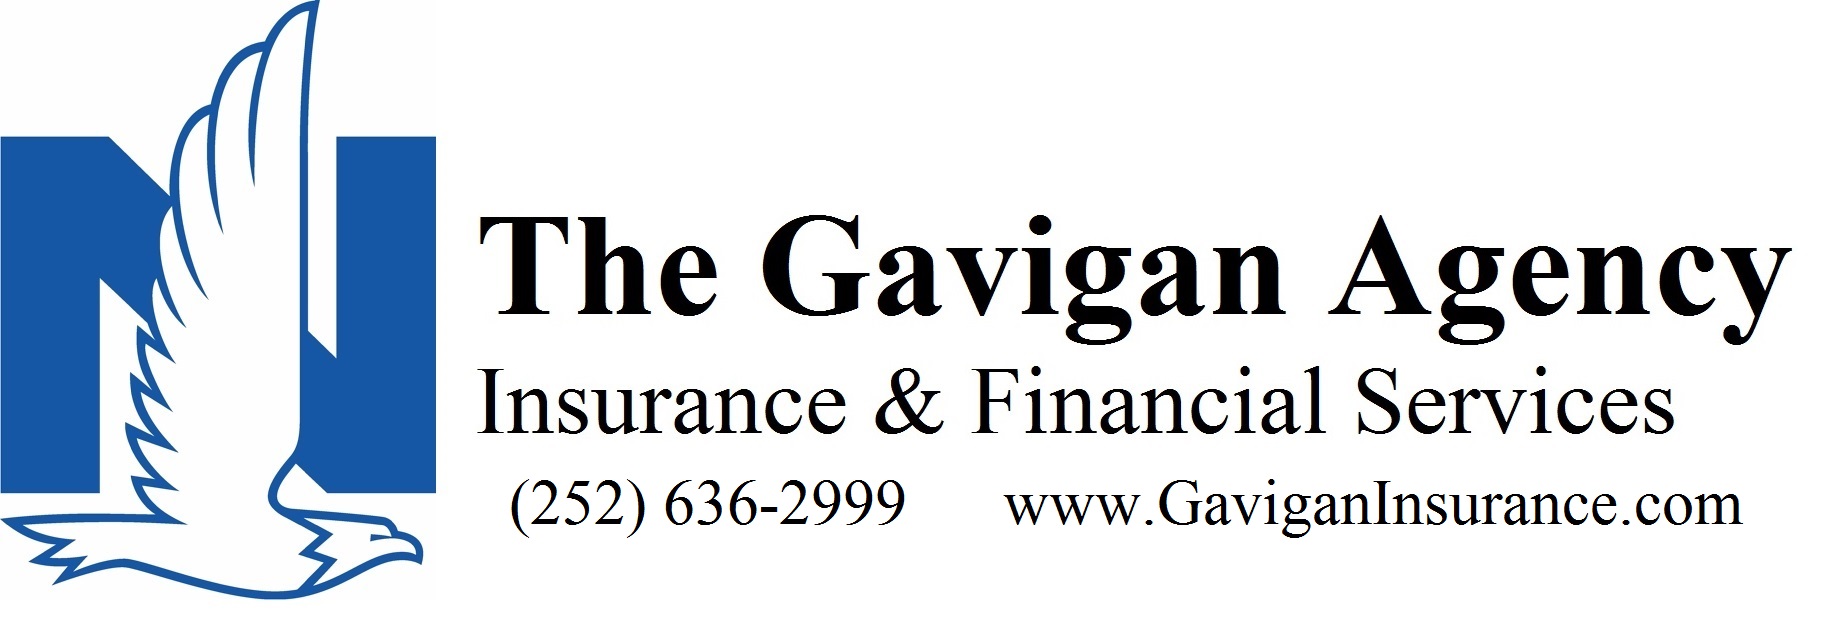 Sponsor The Gavigan Agency